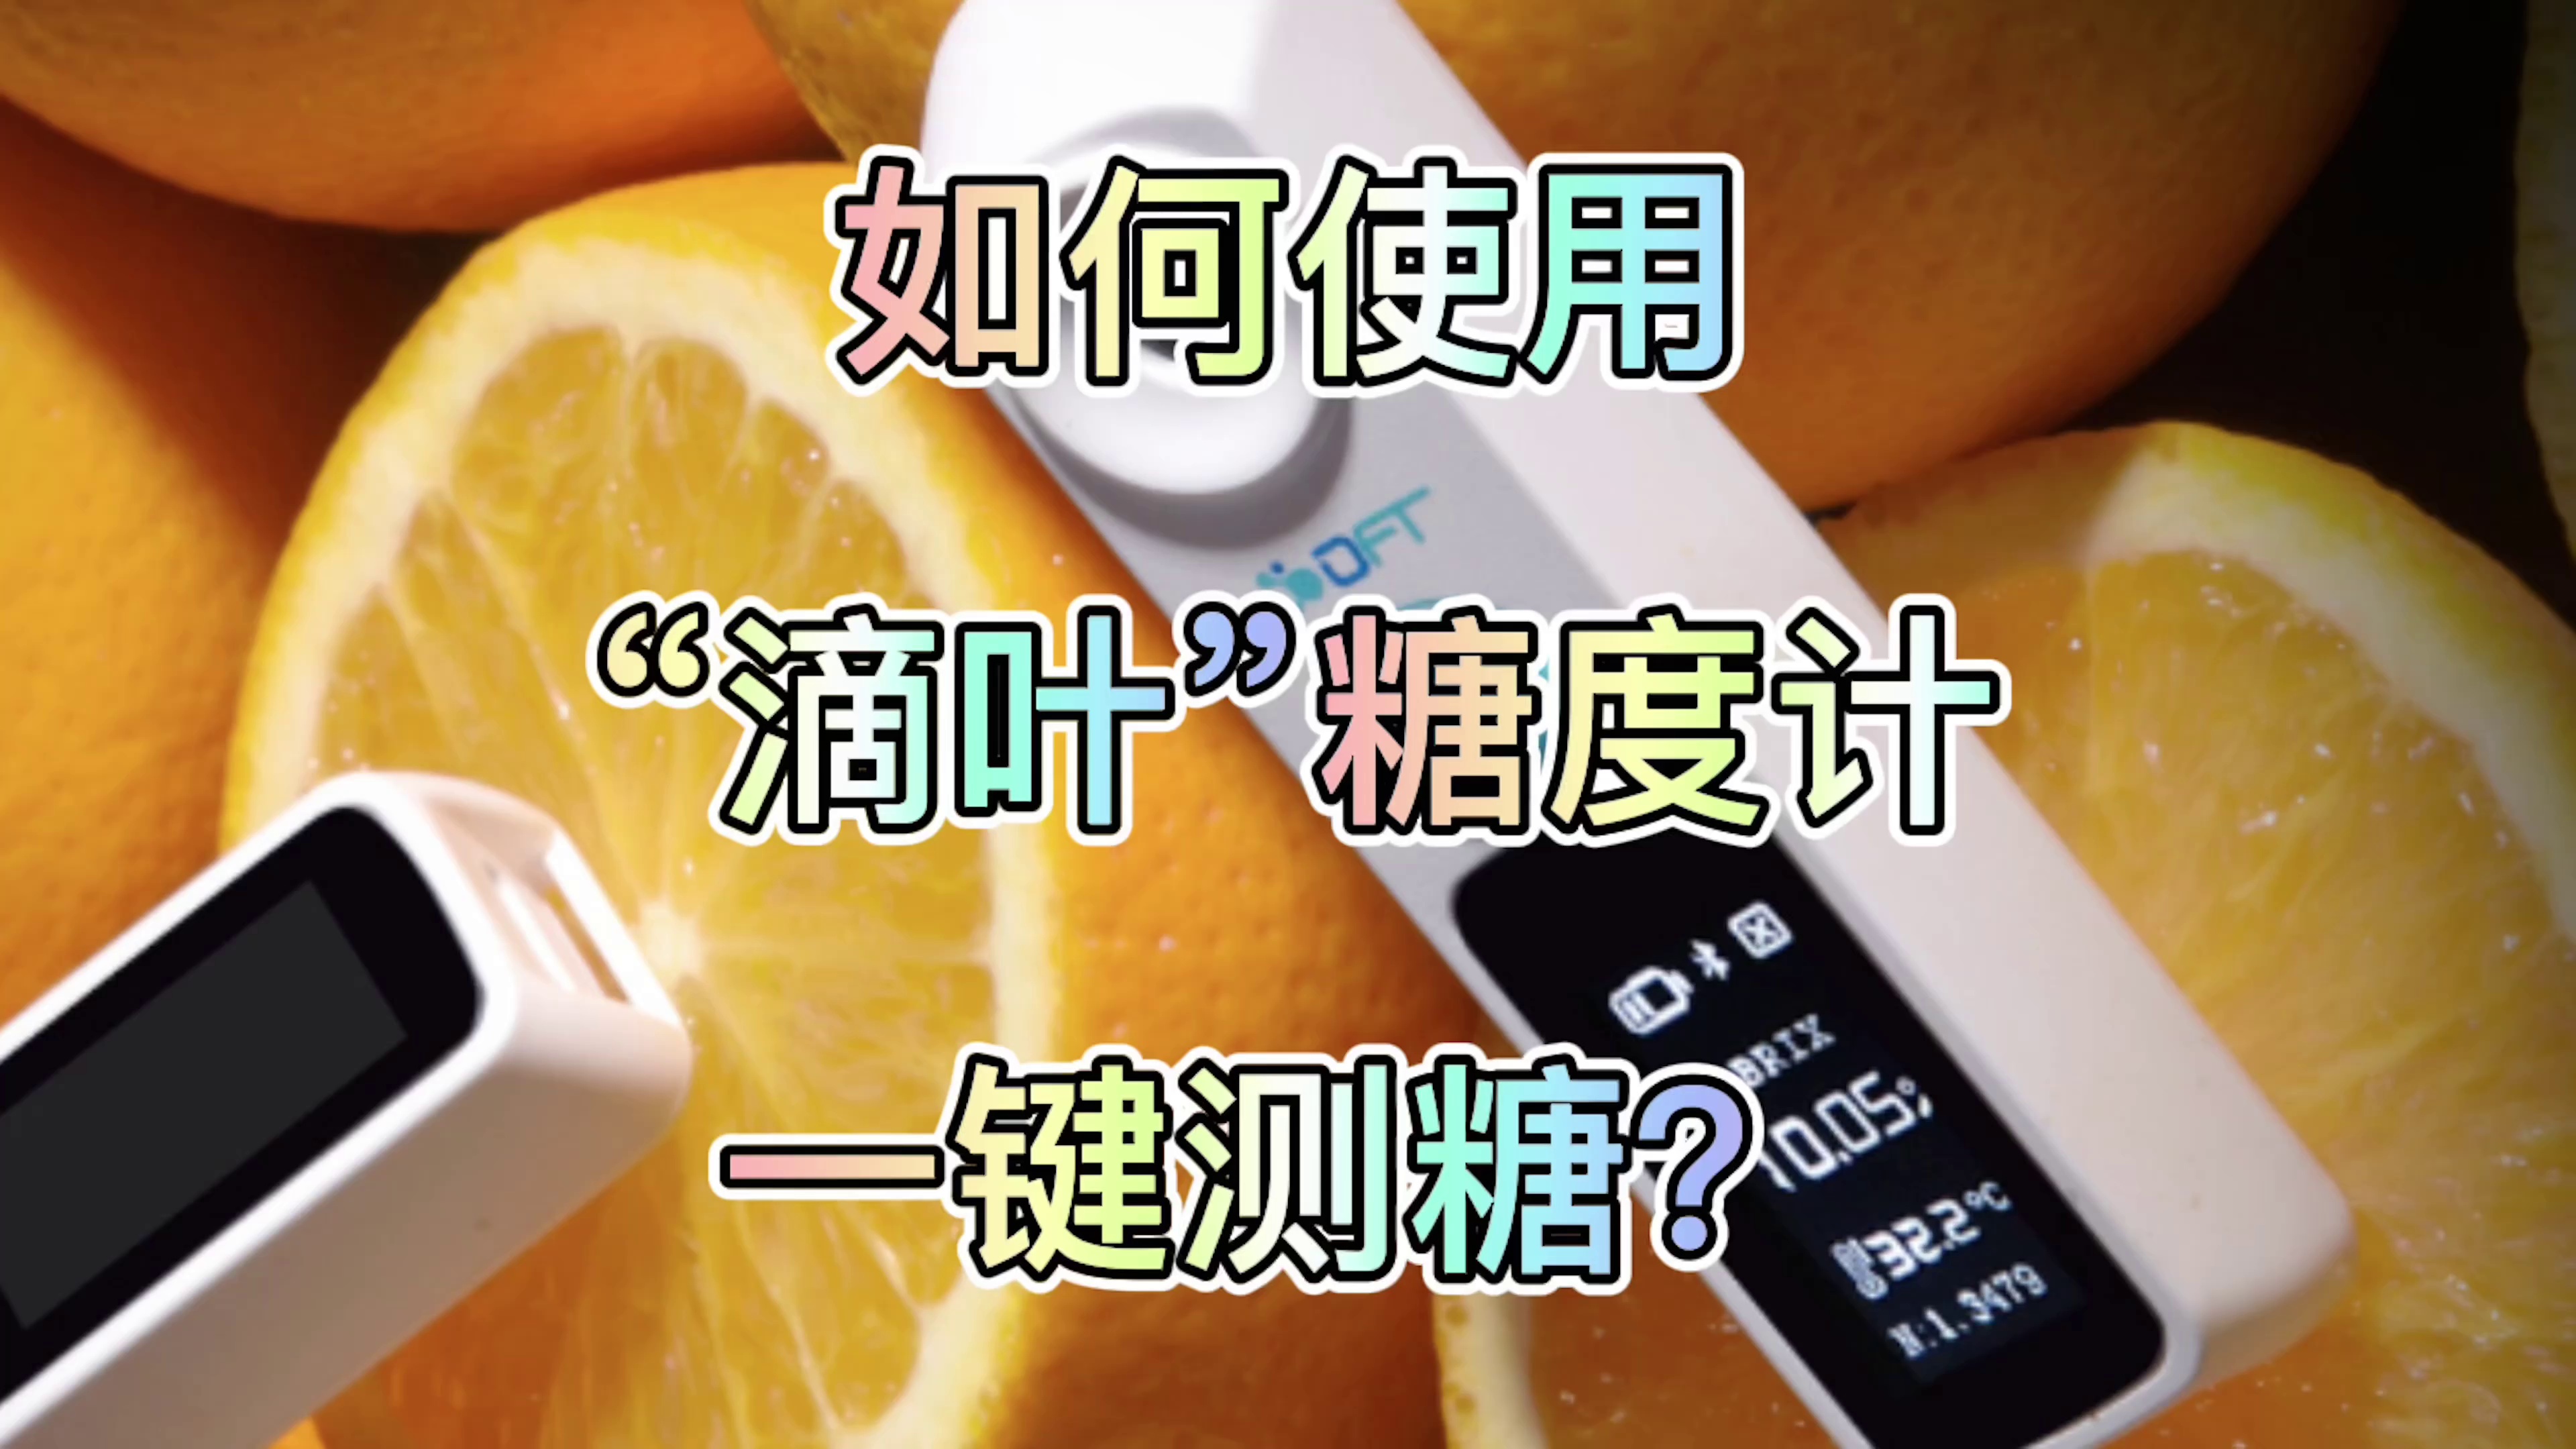 설탕 측정기 고정밀 과일 설탕 측정기 디지털 디스플레이 농도 측정기 과일 특수 배꼽 오렌지 감귤류 단맛 시험기